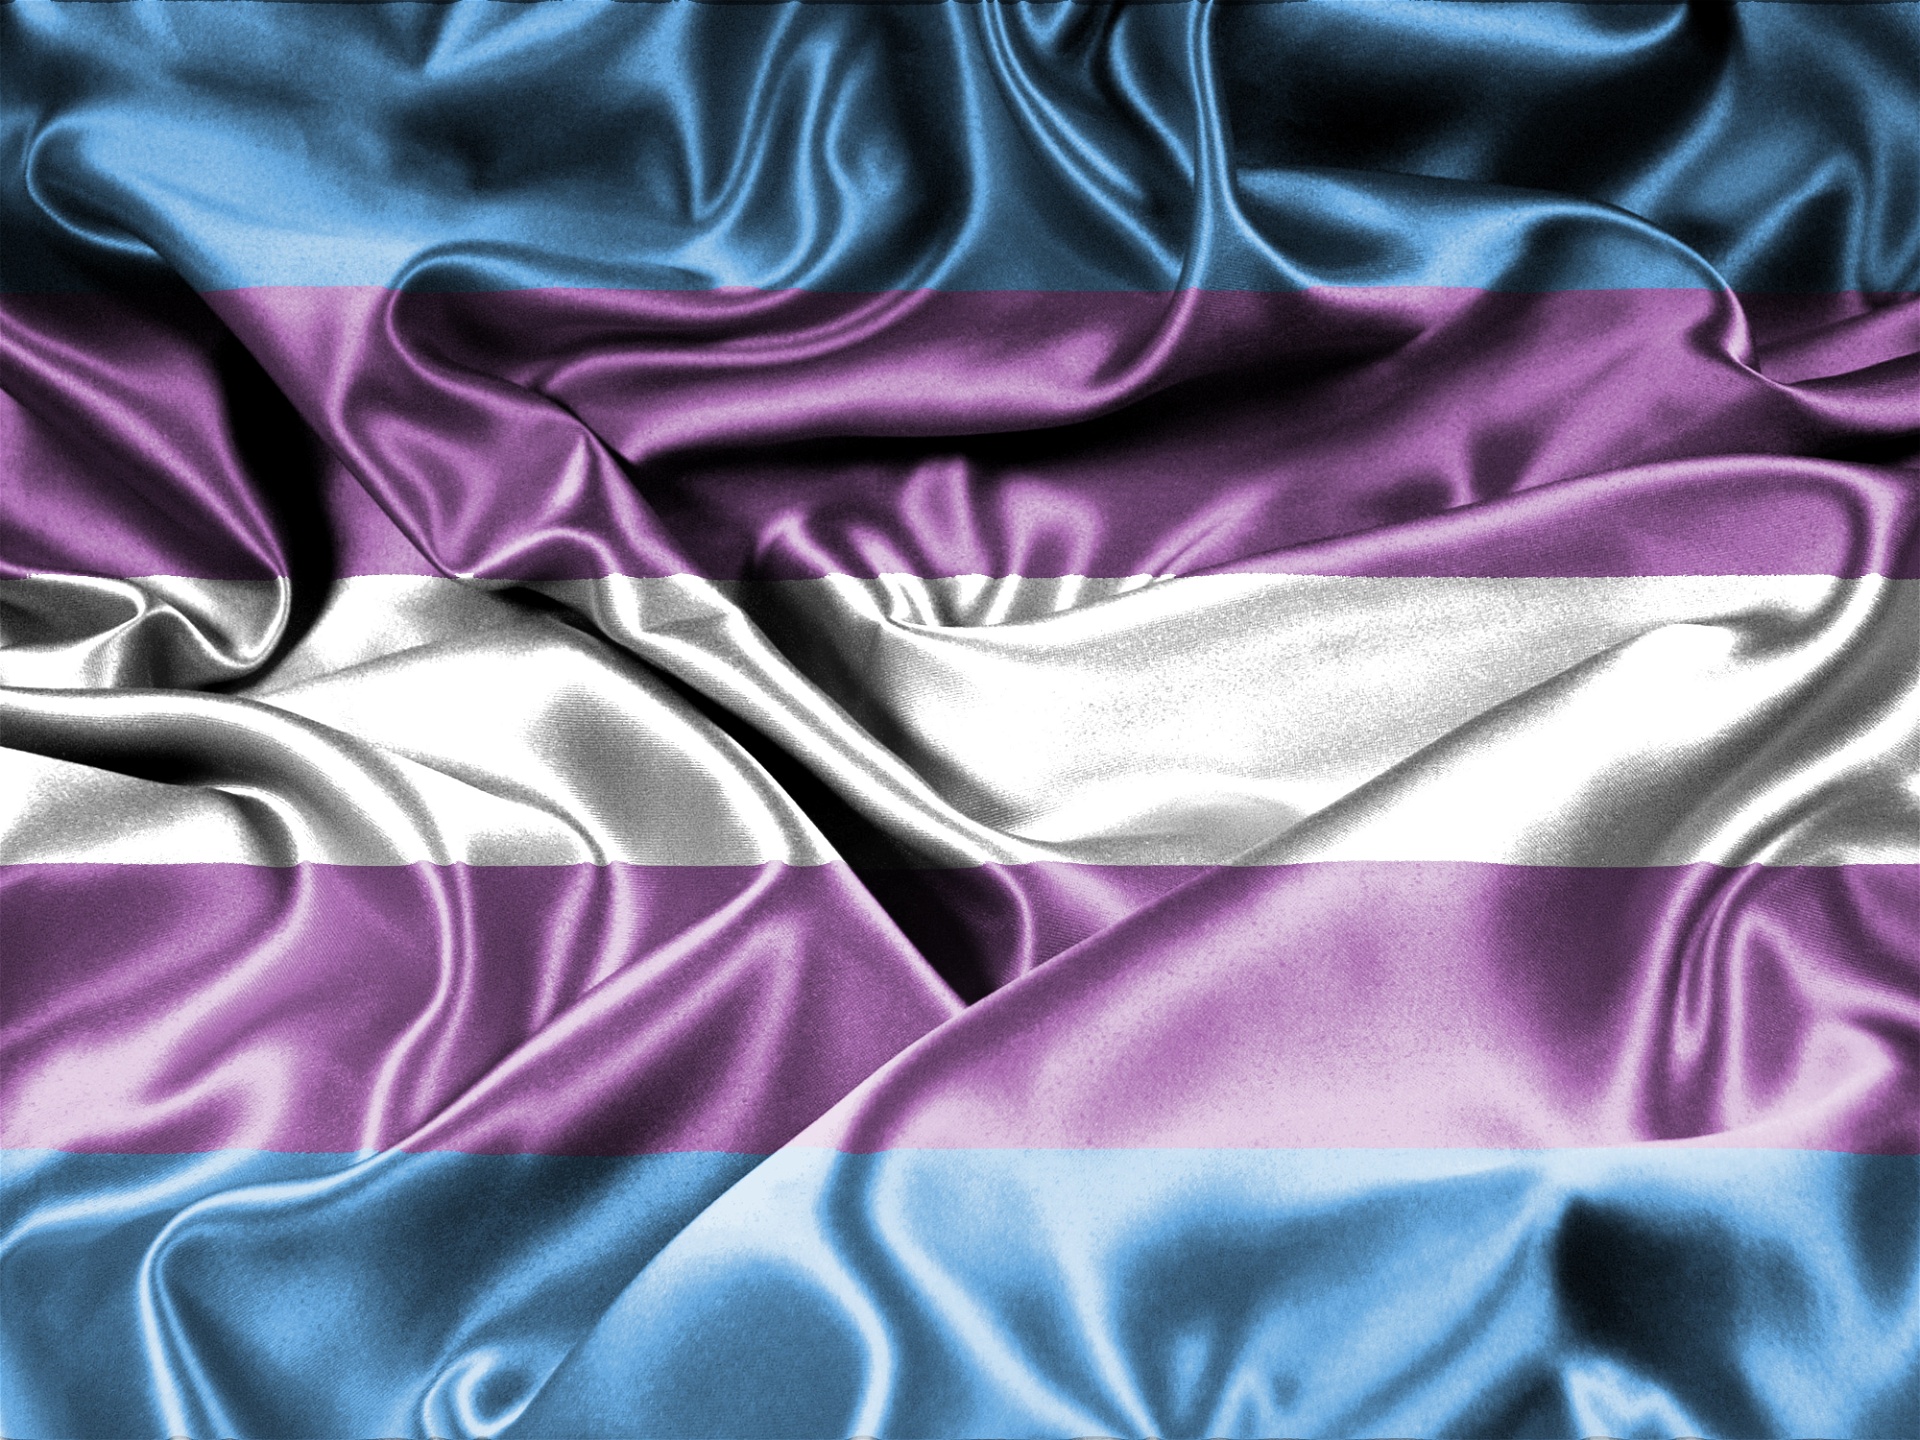 Trans pride-flaggan, som har färgerna ljusblå, rosa och vit i ett glänsande sidentyg.